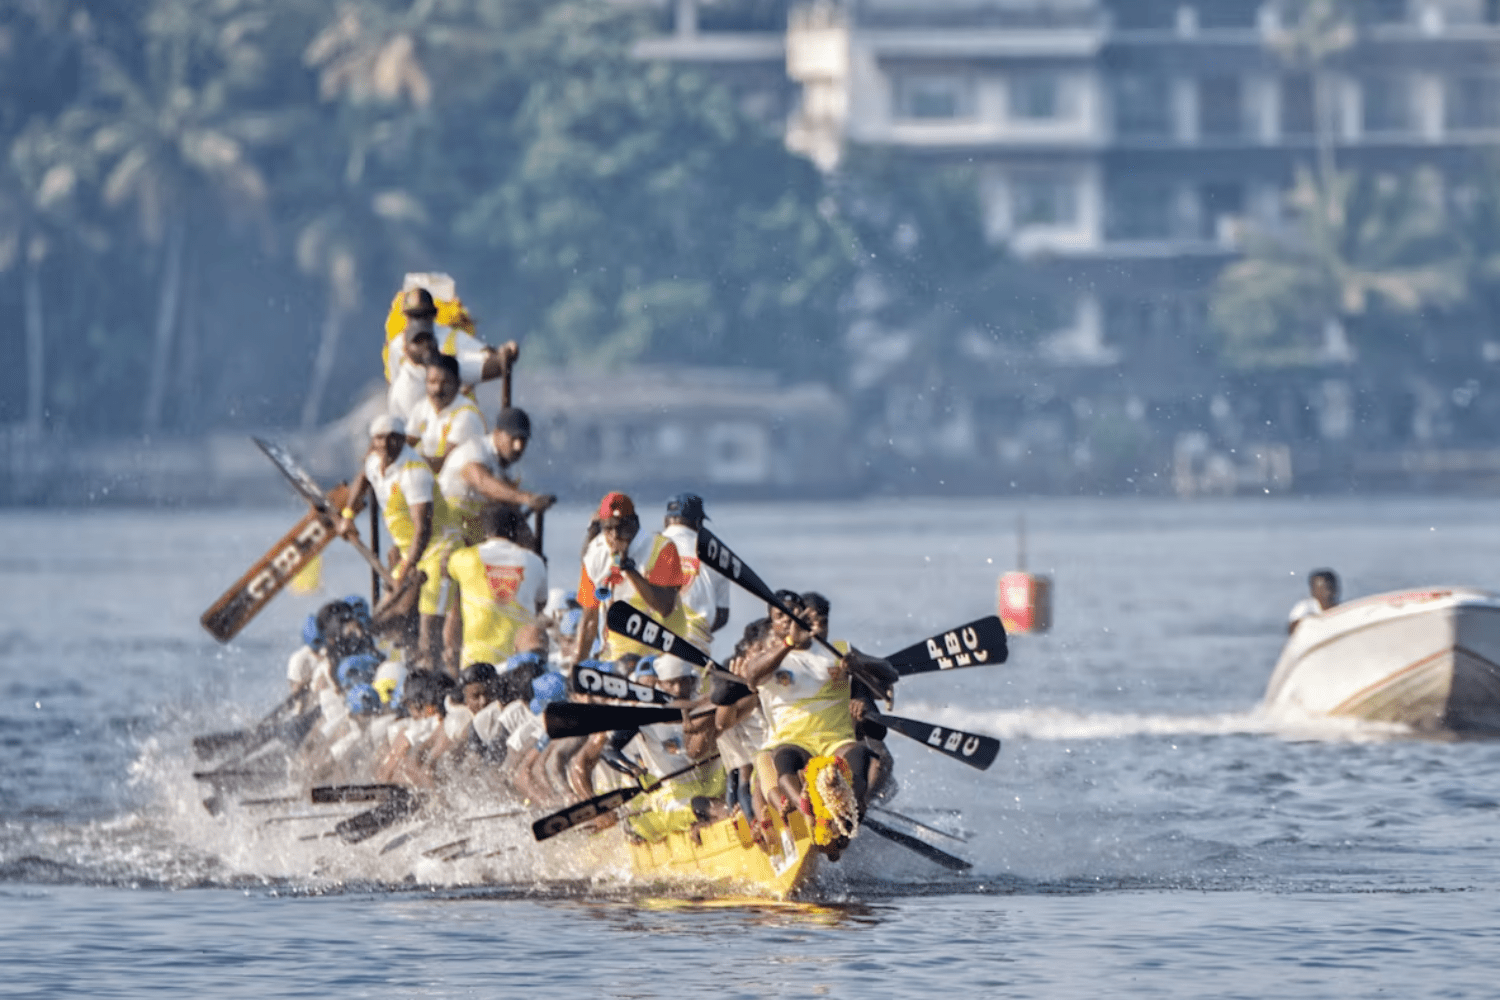 snake-boat-race-in-kerala